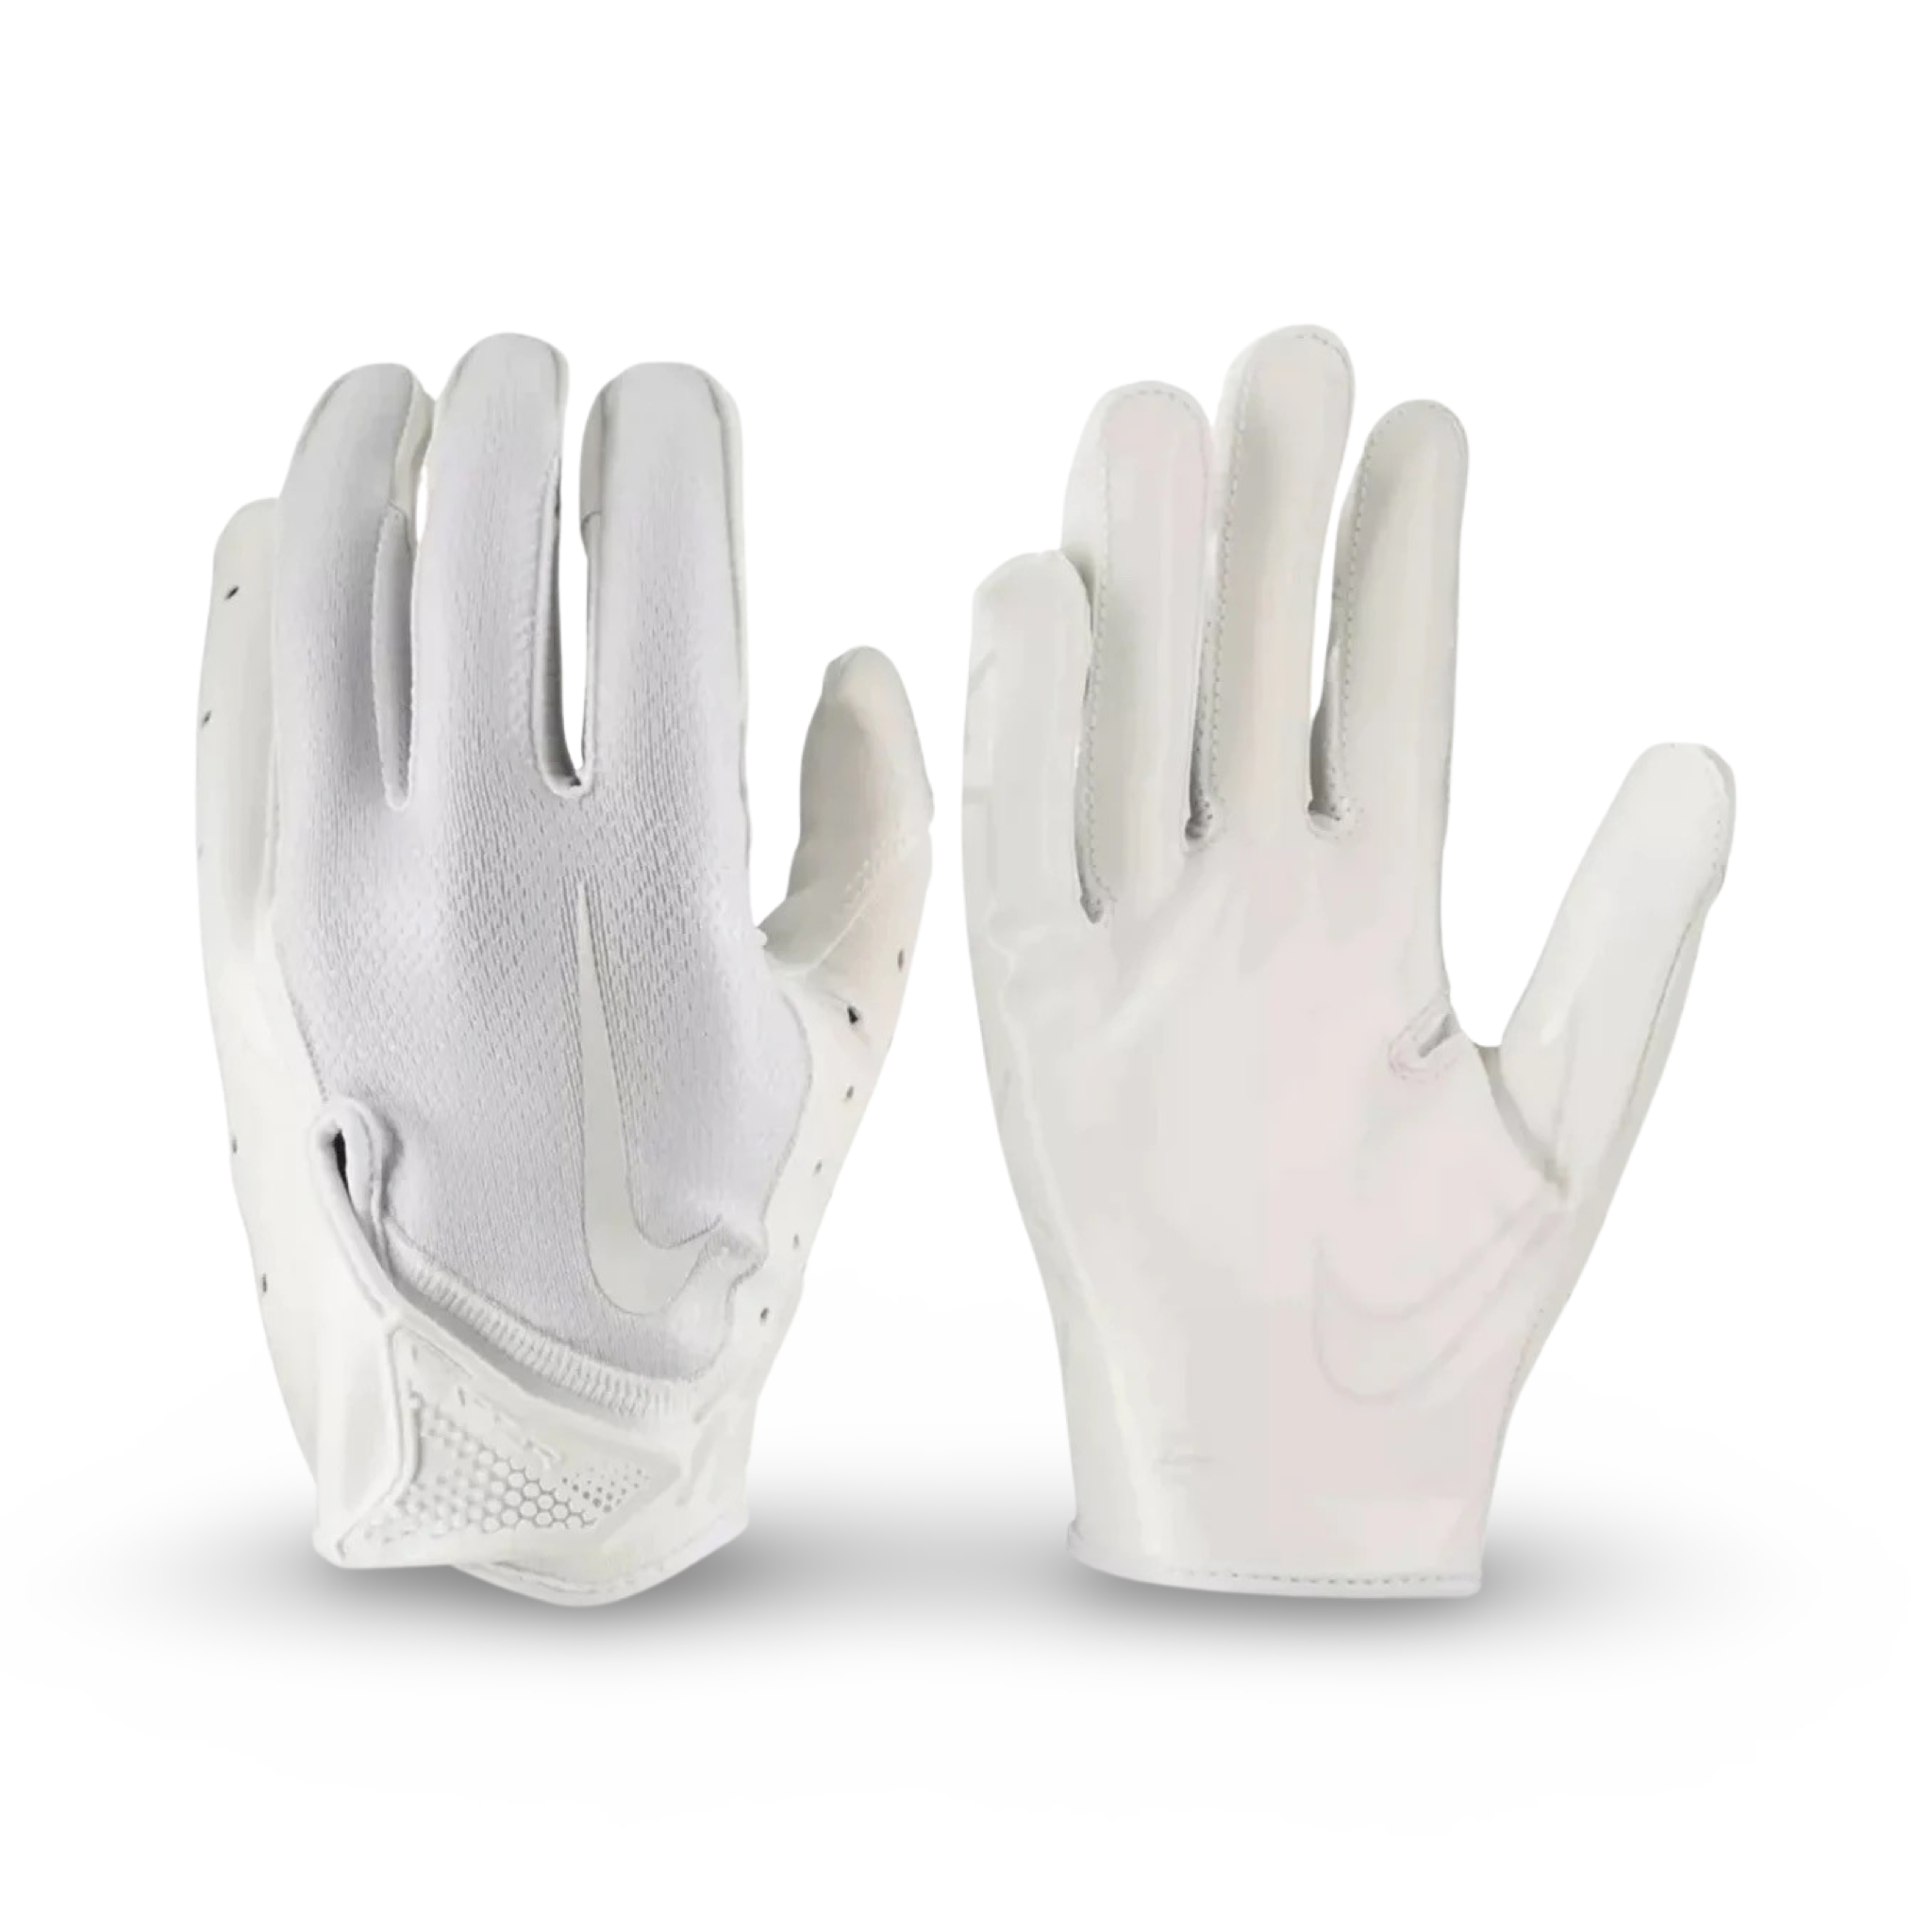 Nike Men’s Vapor Jet 7.0 Football Gloves - All white